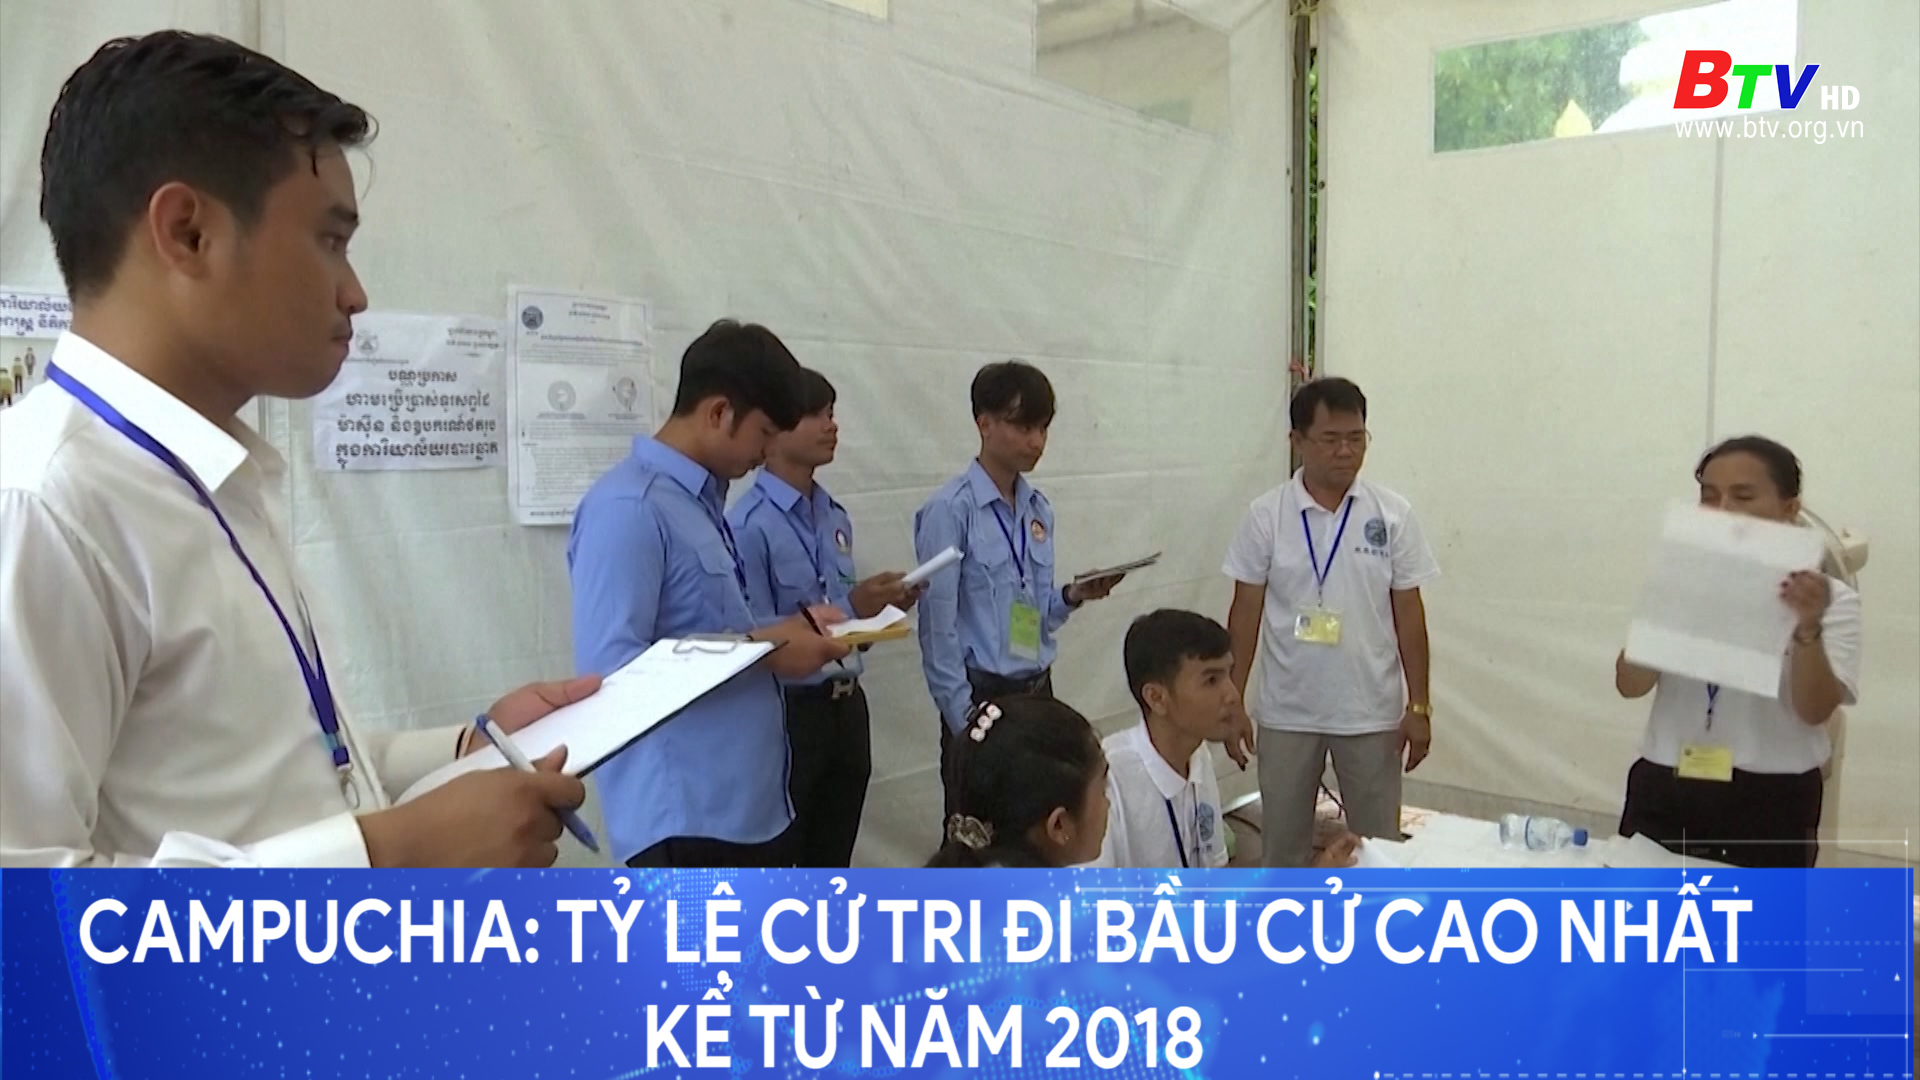 Campuchia - tỷ lệ cử tri đi bầu cử cao nhất kể từ năm 2018	